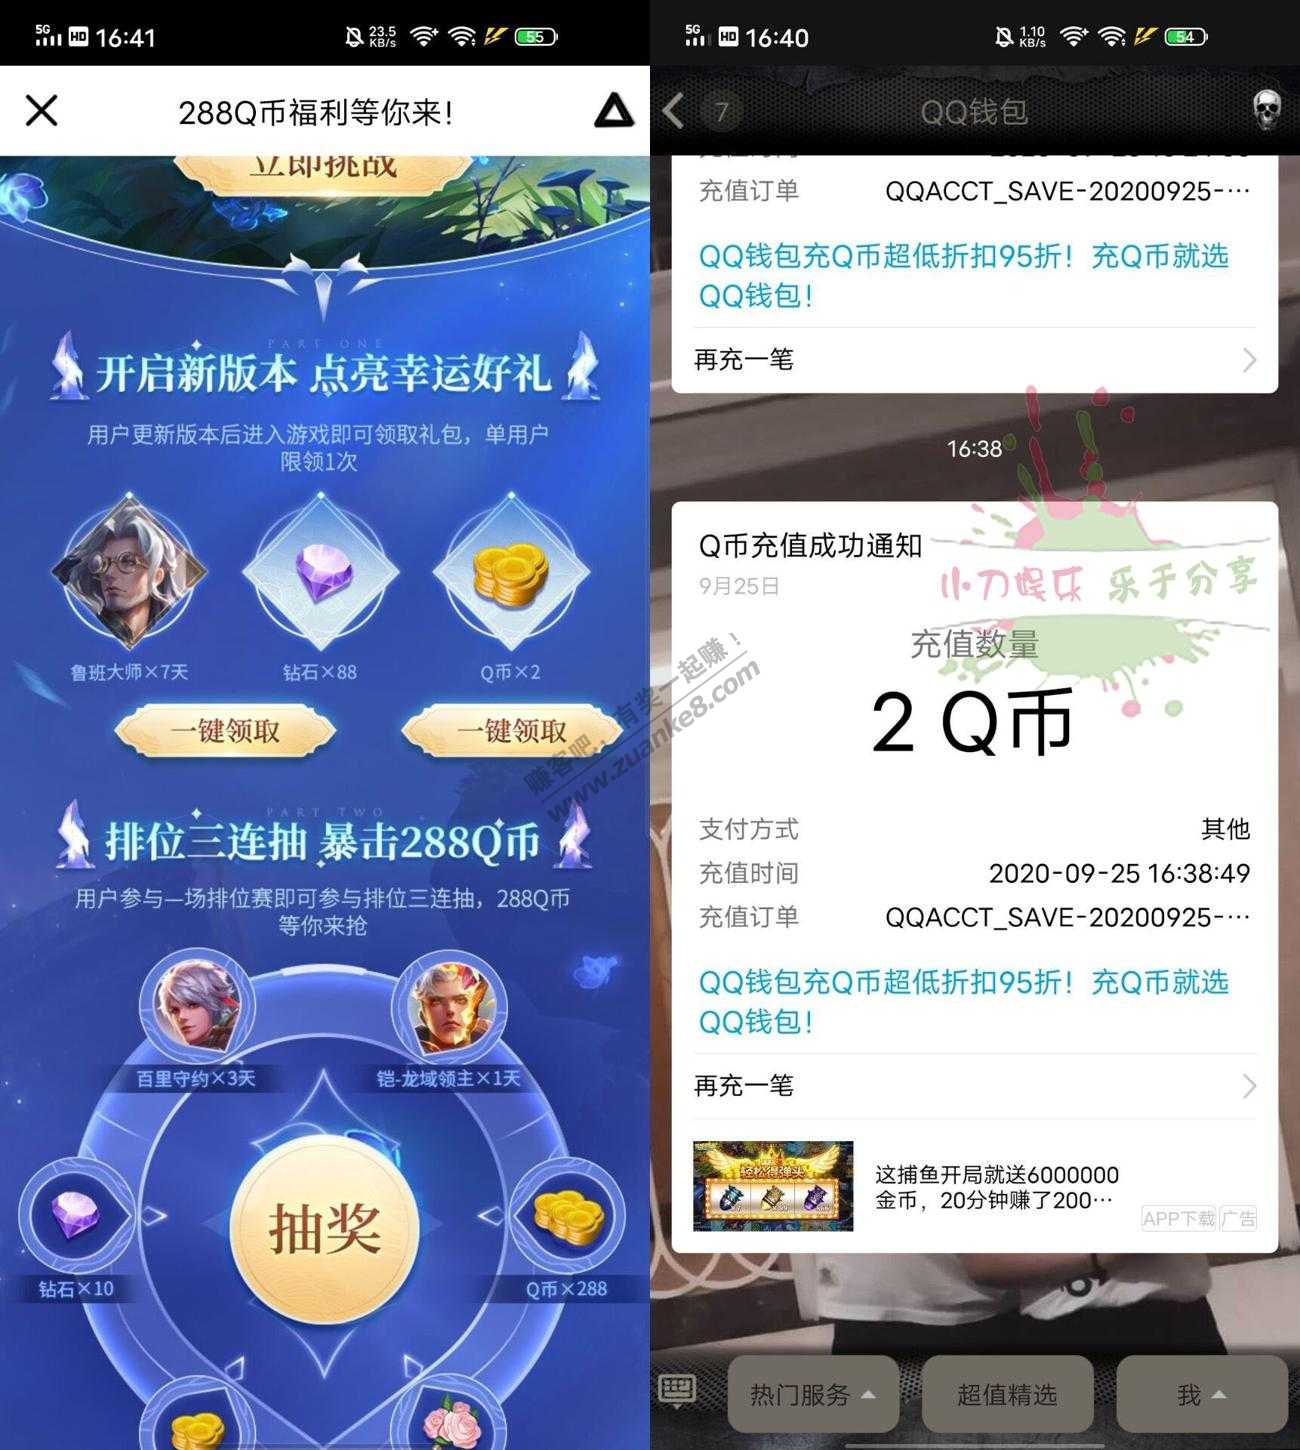 王者荣耀幸运用户领取2QB秒到账-惠小助(52huixz.com)